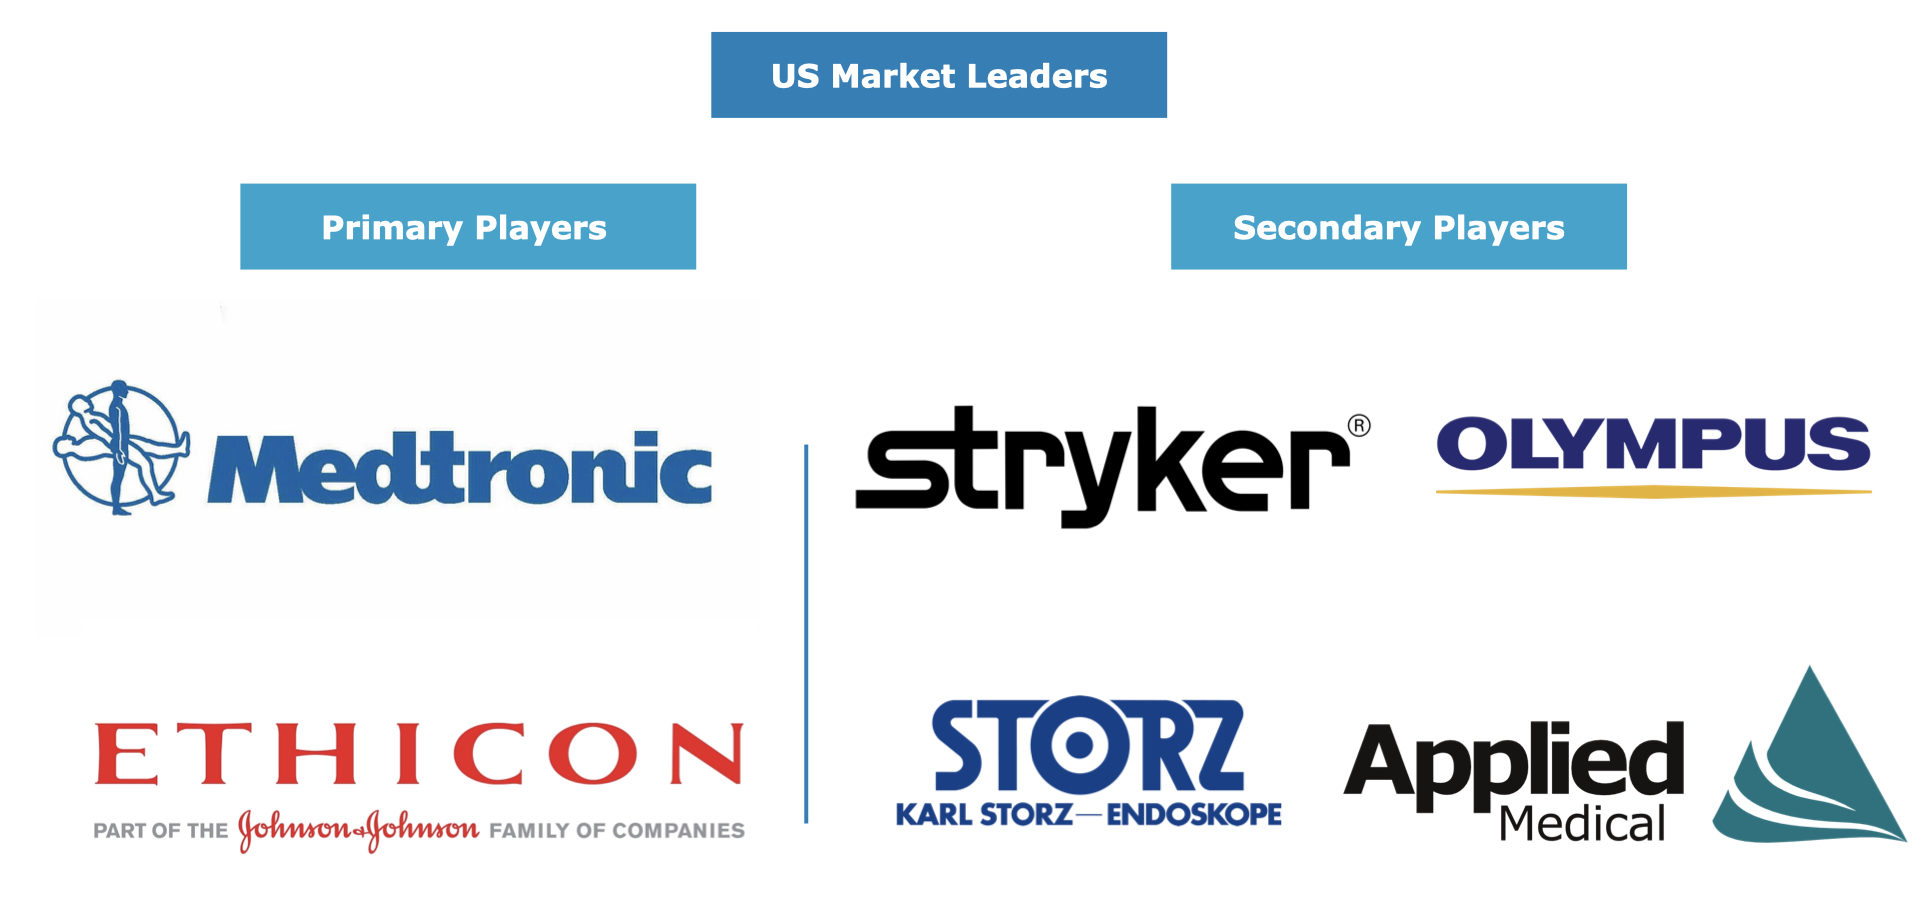 US Laparoscopic Device Market Leaders